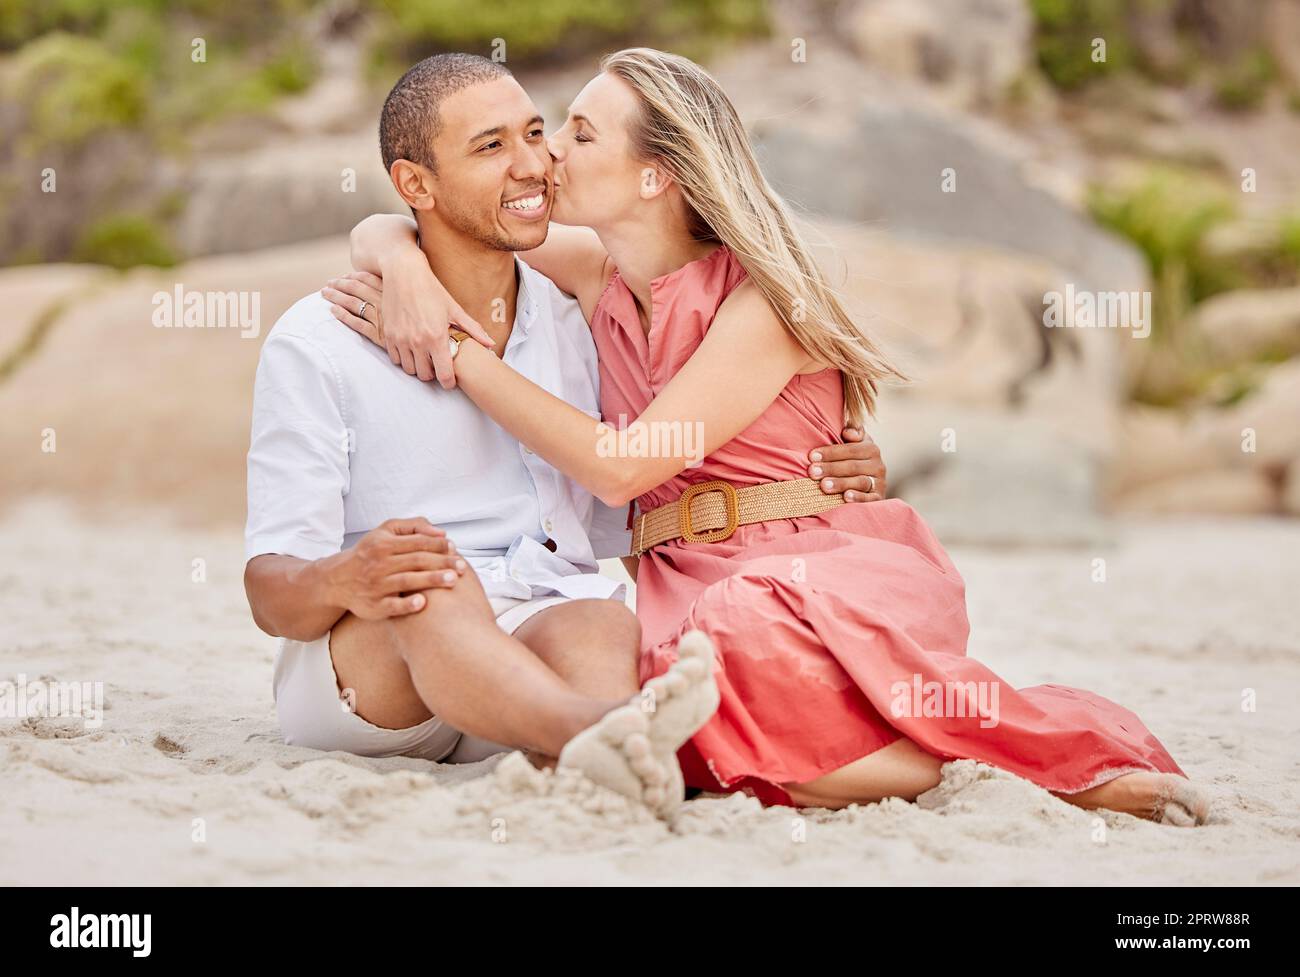 Kuss, Liebe und Paar auf Strand Sand mit fröhlichem Lächeln für Urlaub oder Urlaub zusammen. Gesundes Glück und zwischenmenschliche Menschen oder Menschen entspannen sich vor Ort für Wellness-Lebensstil Stockfoto